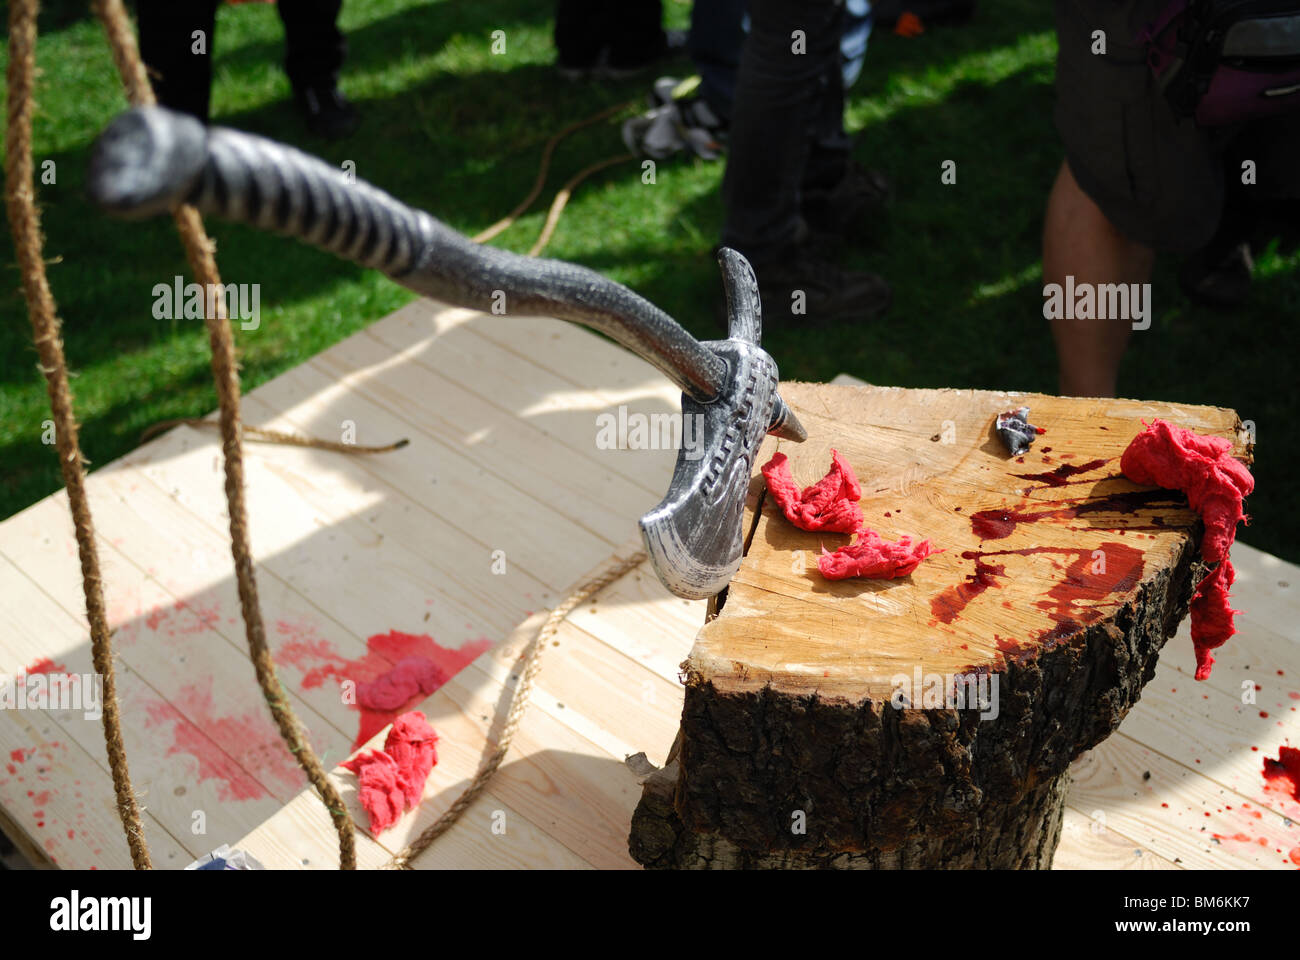 La hache du bourreau se trouve dans un bloc de bois qui a servi à décapiter l'effigie de Gordon Brown pour le premier mai. Banque D'Images